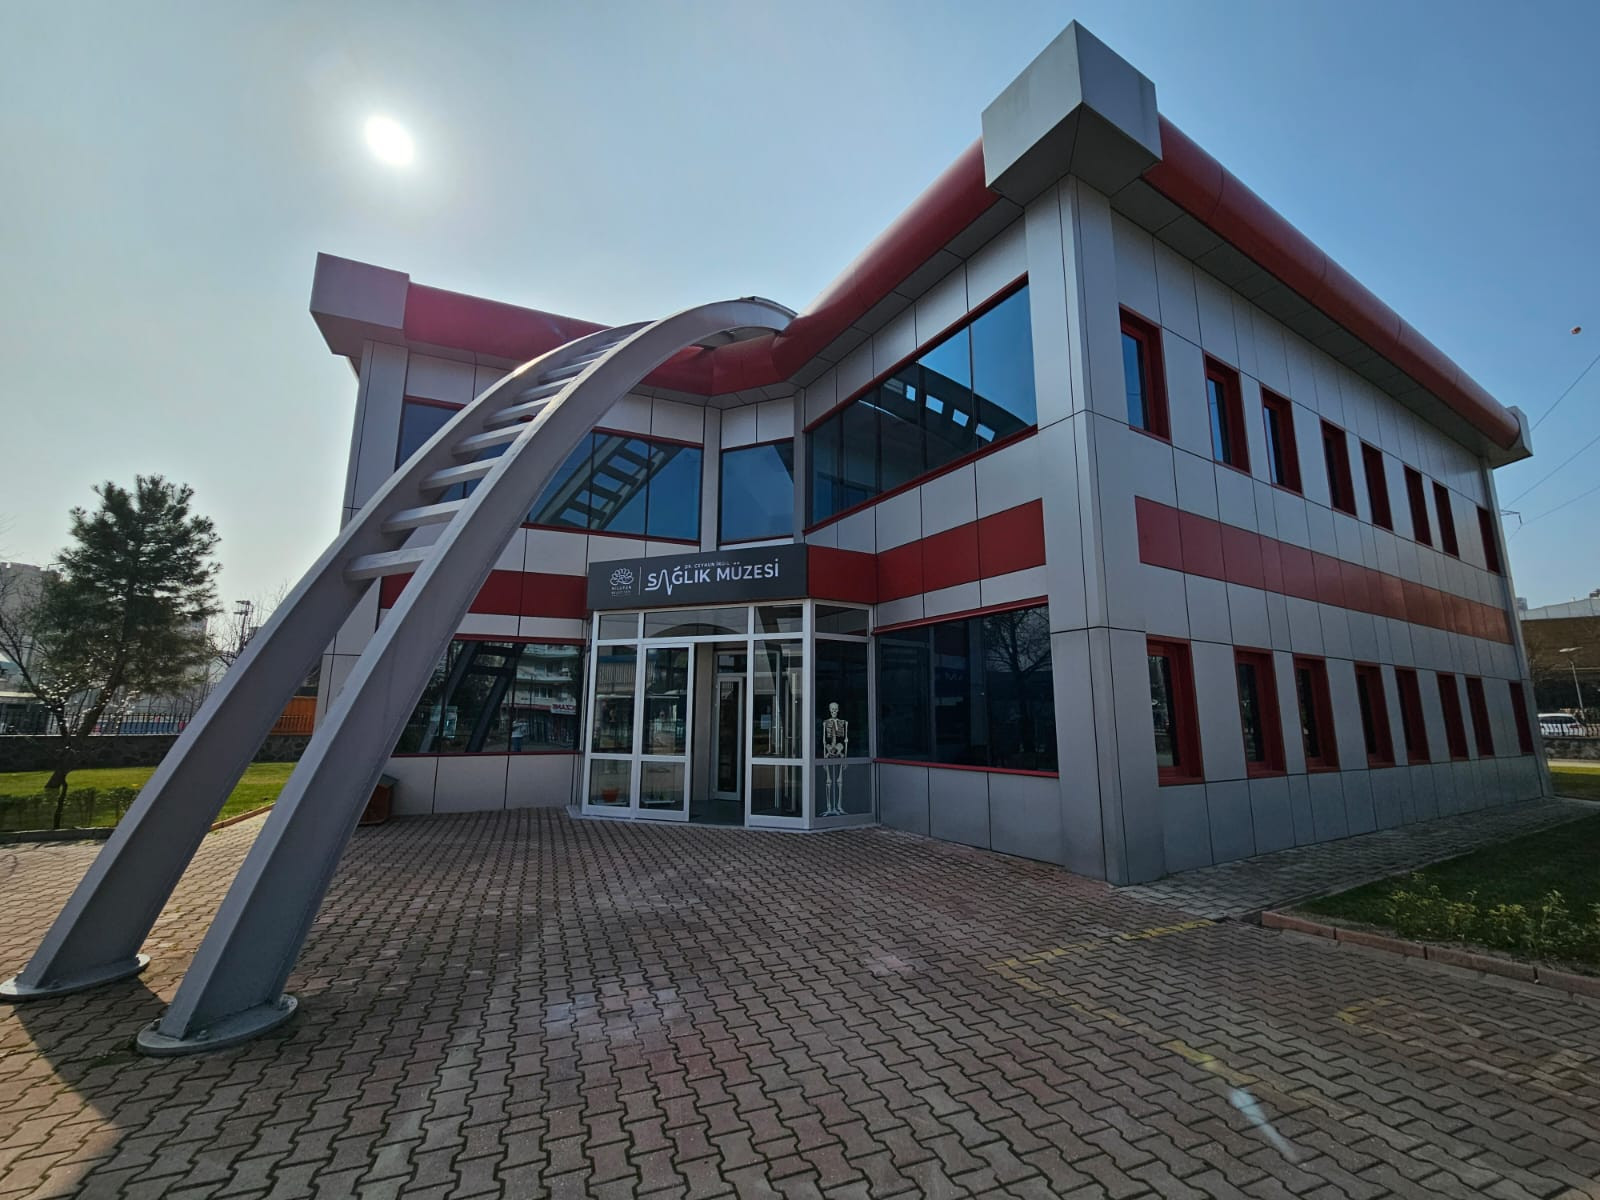 Bursa'da Sağlık Müzesi 4 yıl sonra açılıyor